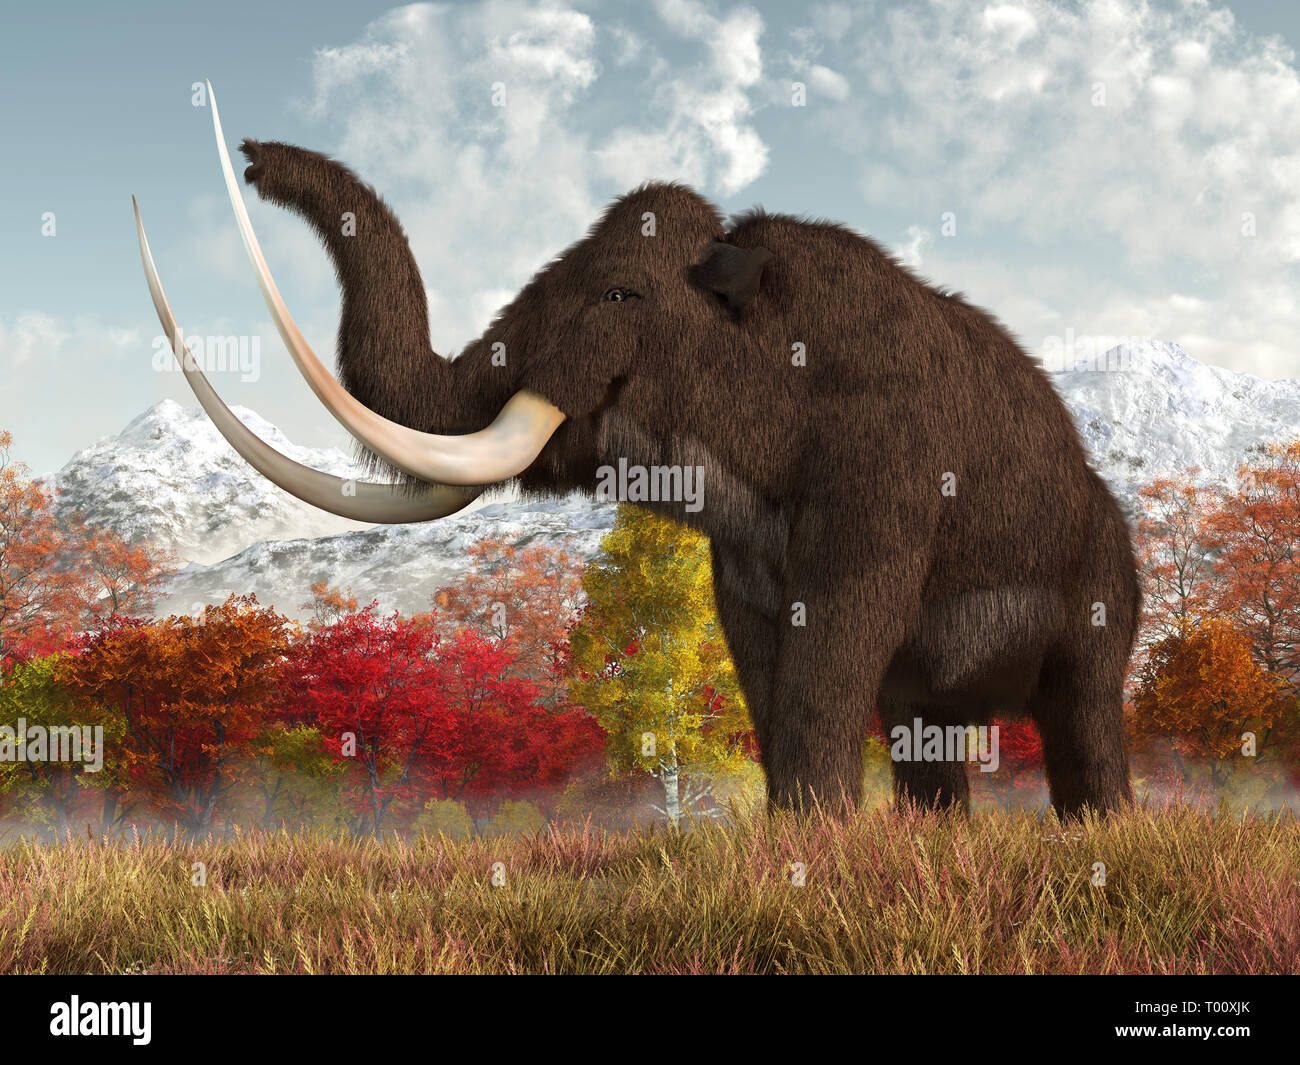 Un shaggy mammut lanosi sorge nell'erba lunga di un campo in una scena d'autunno. Questo imponente animale è una creatura estinto di Ice Age. Foto Stock